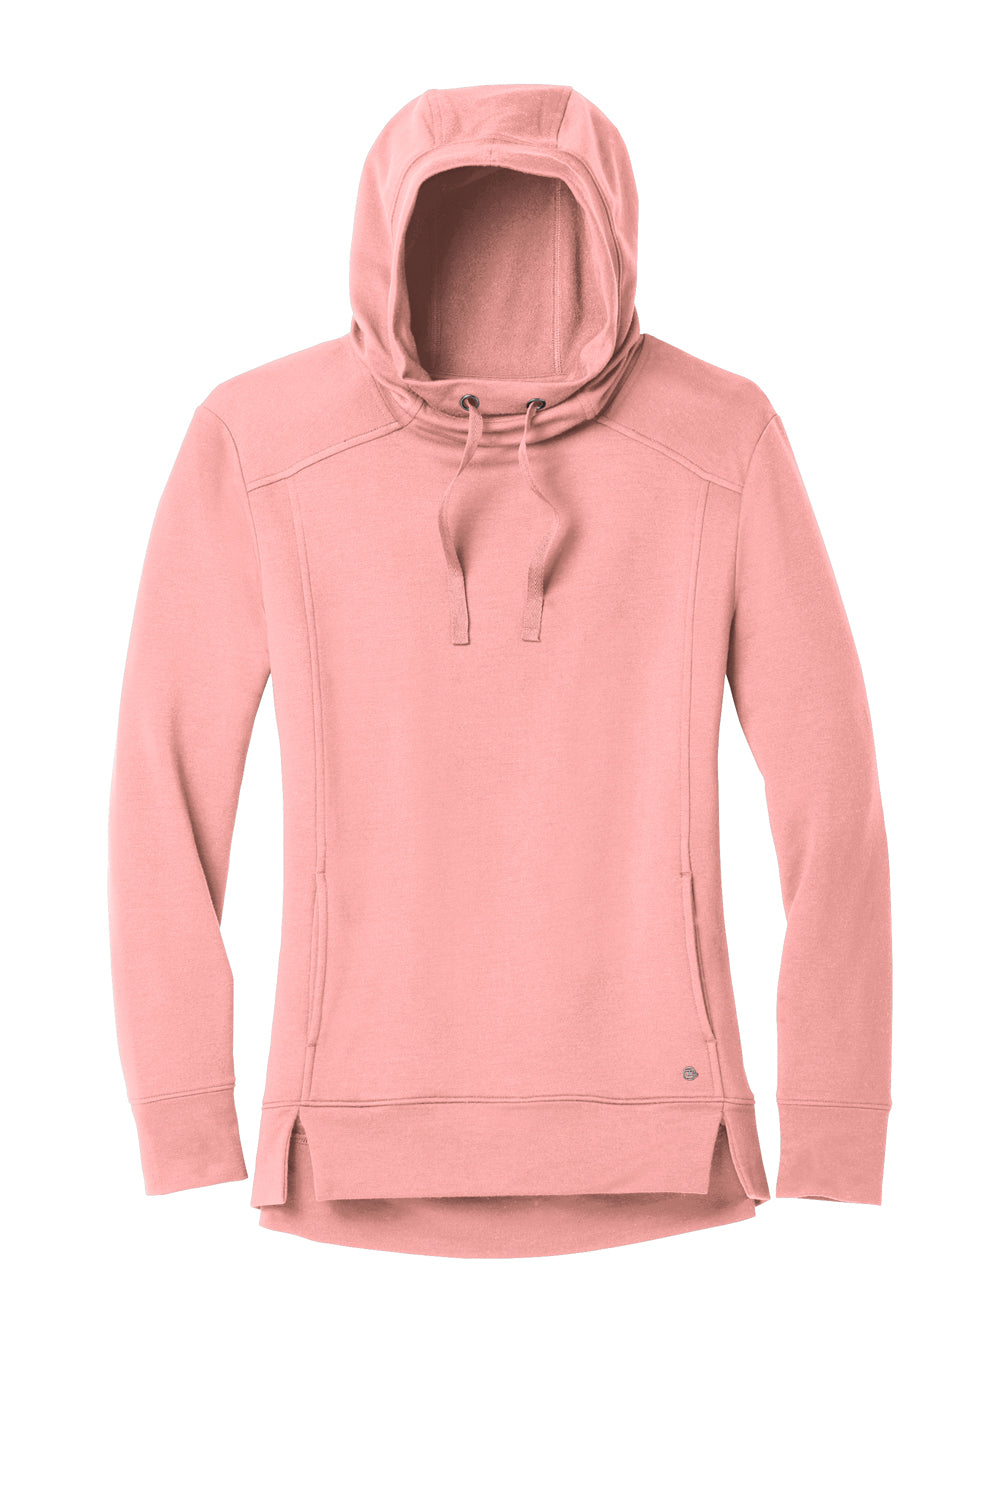 Ogio Womens Luuma Fleece Hooded Sweatshirt Hoodie Swift Pink Flat Front